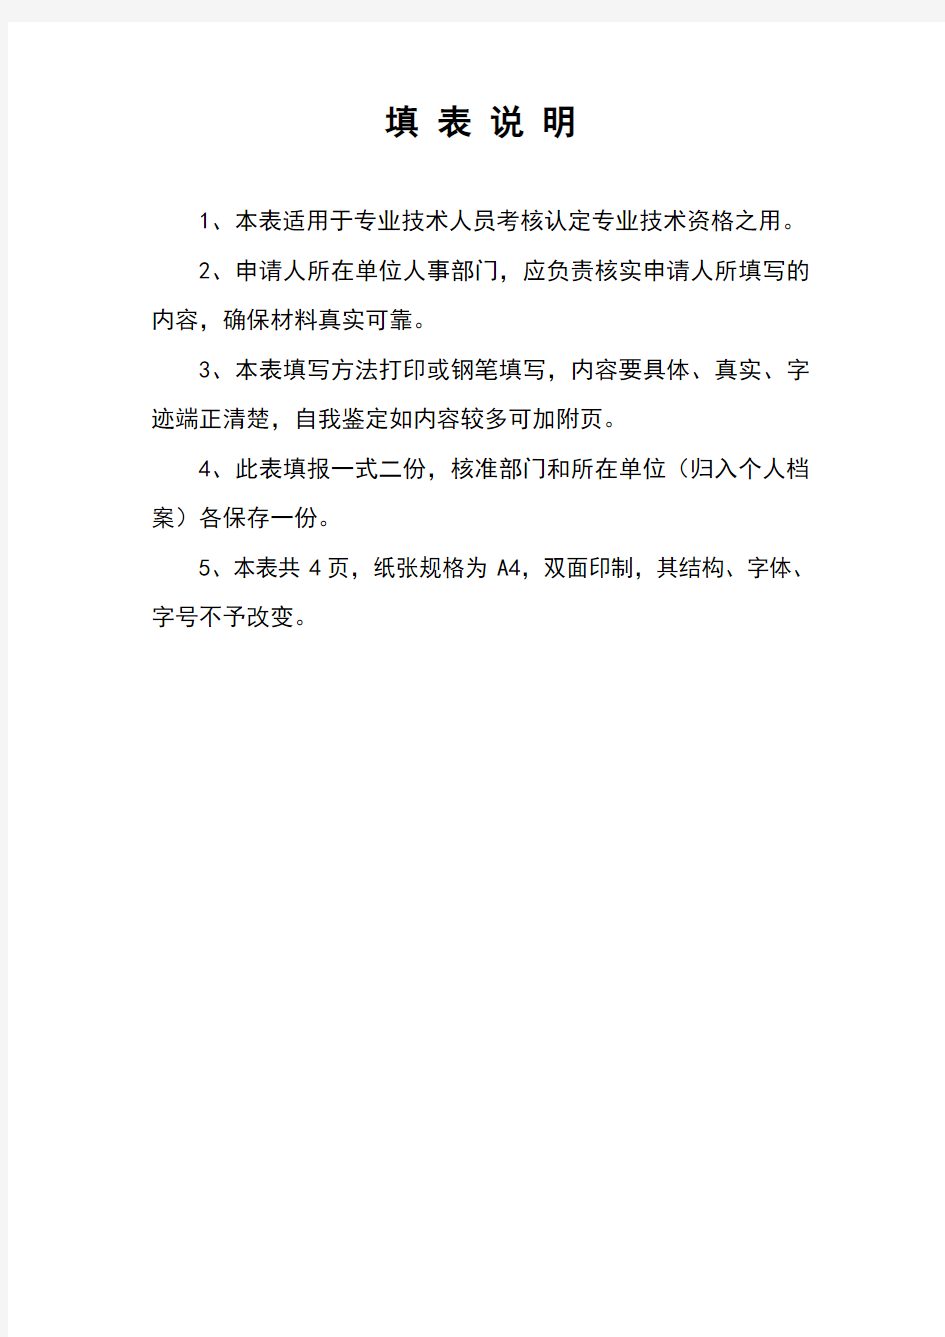 广东省初级职称评定条件及相关表格